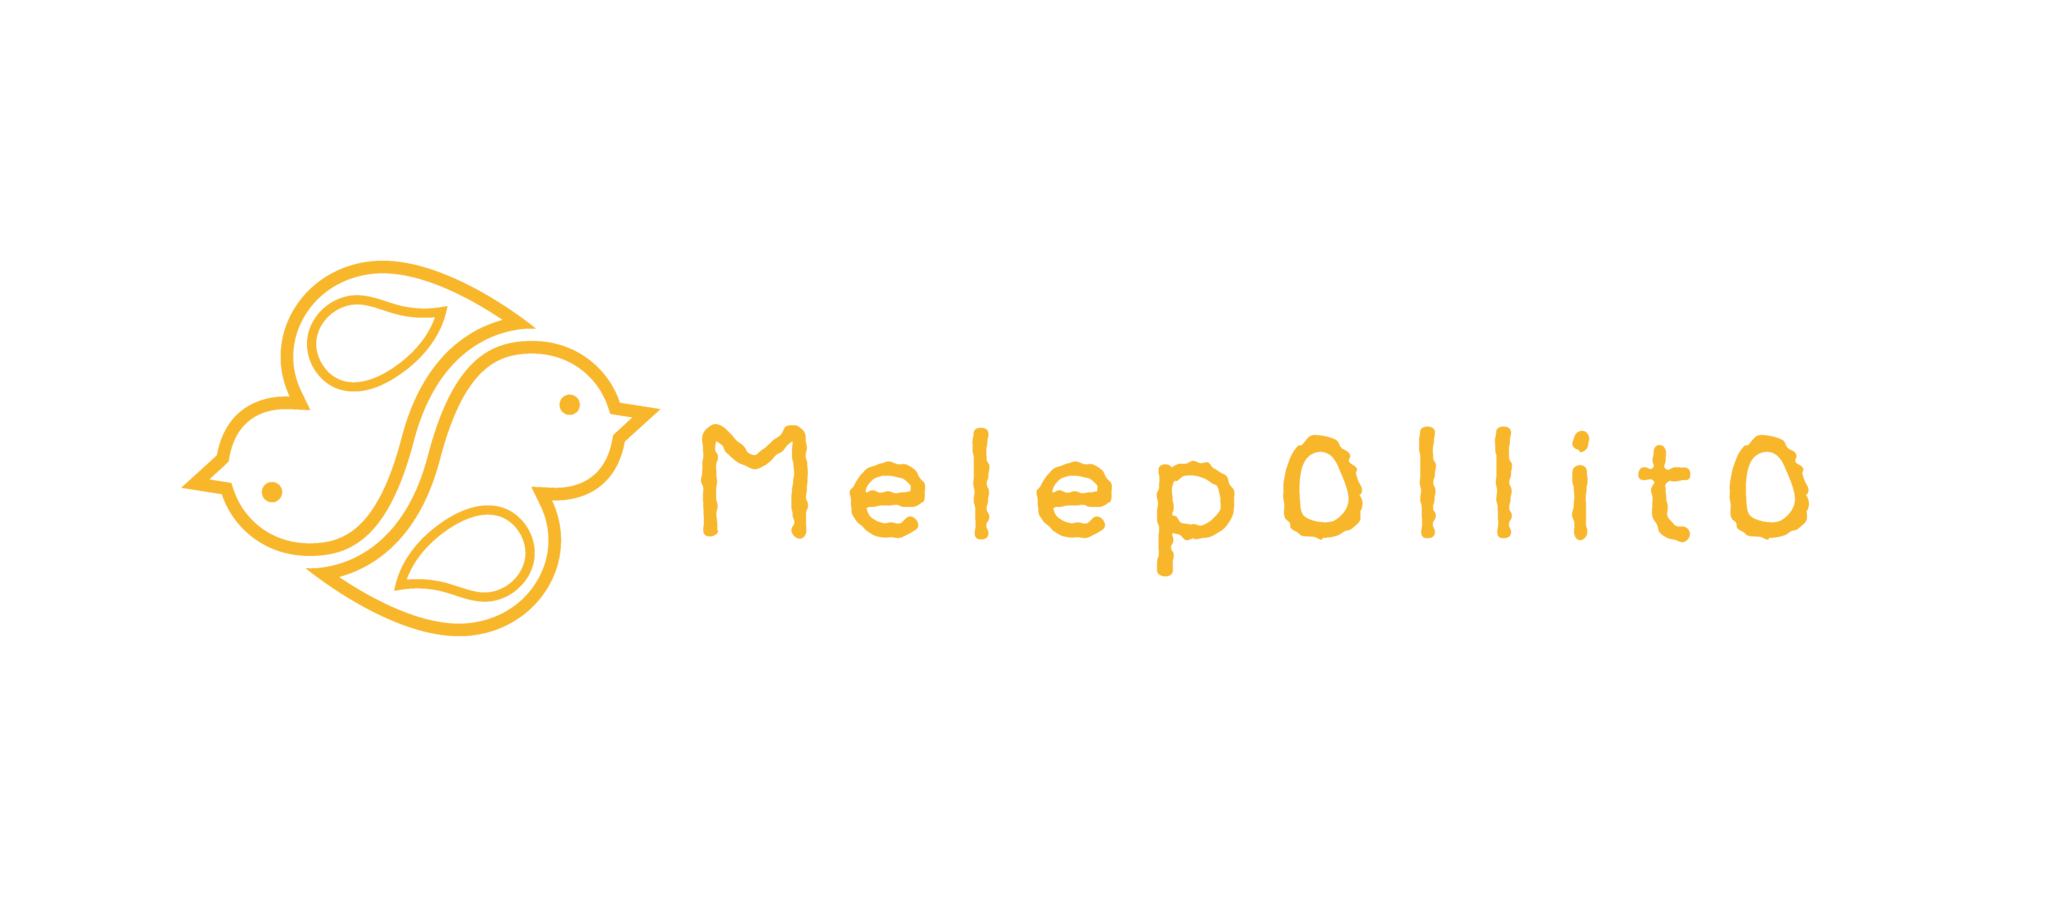 Melepollito(メレポジート)